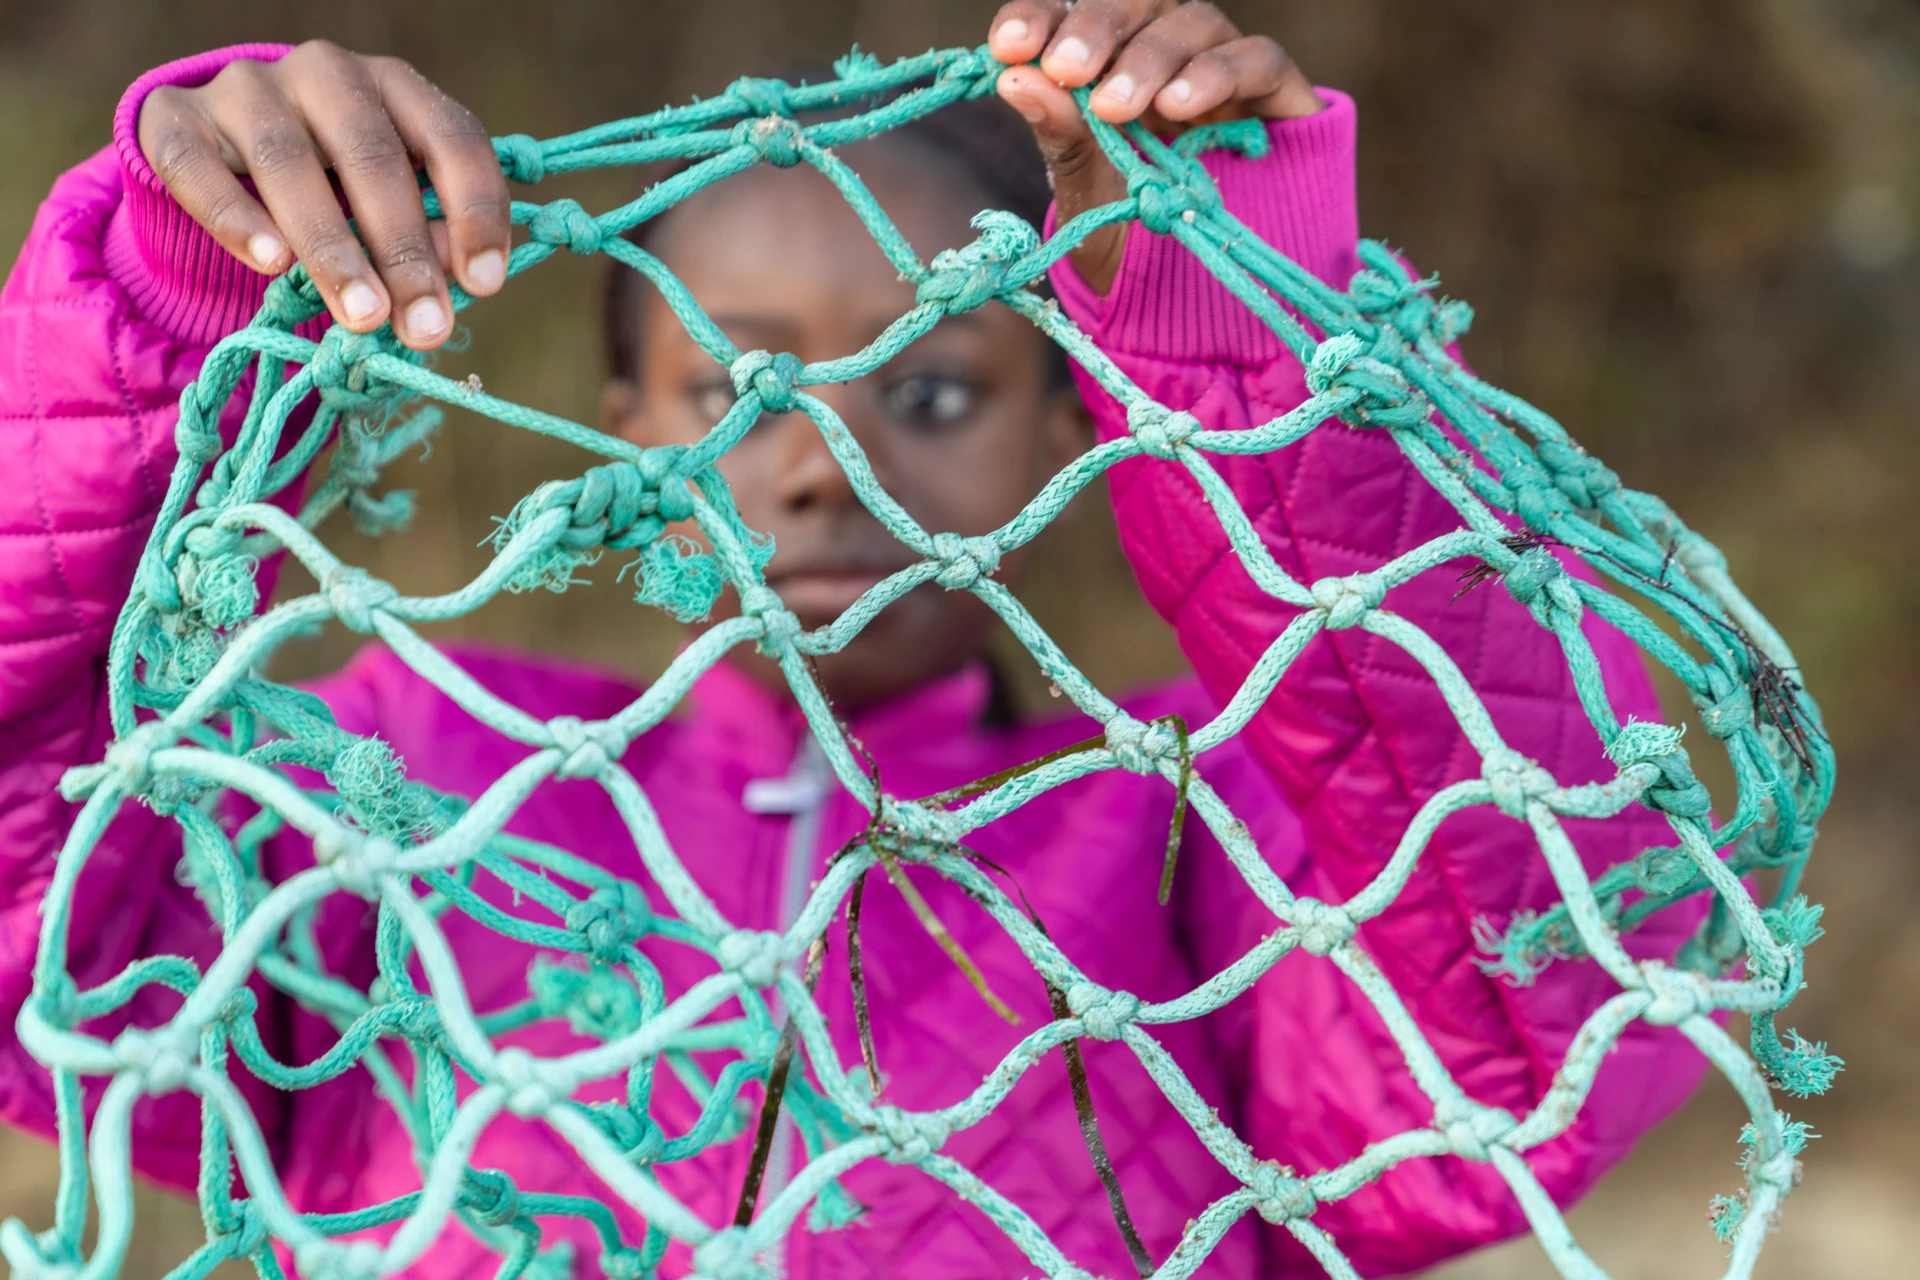 tyttö pitelee rannalta löytyneitä kalaverkkoja käsissään